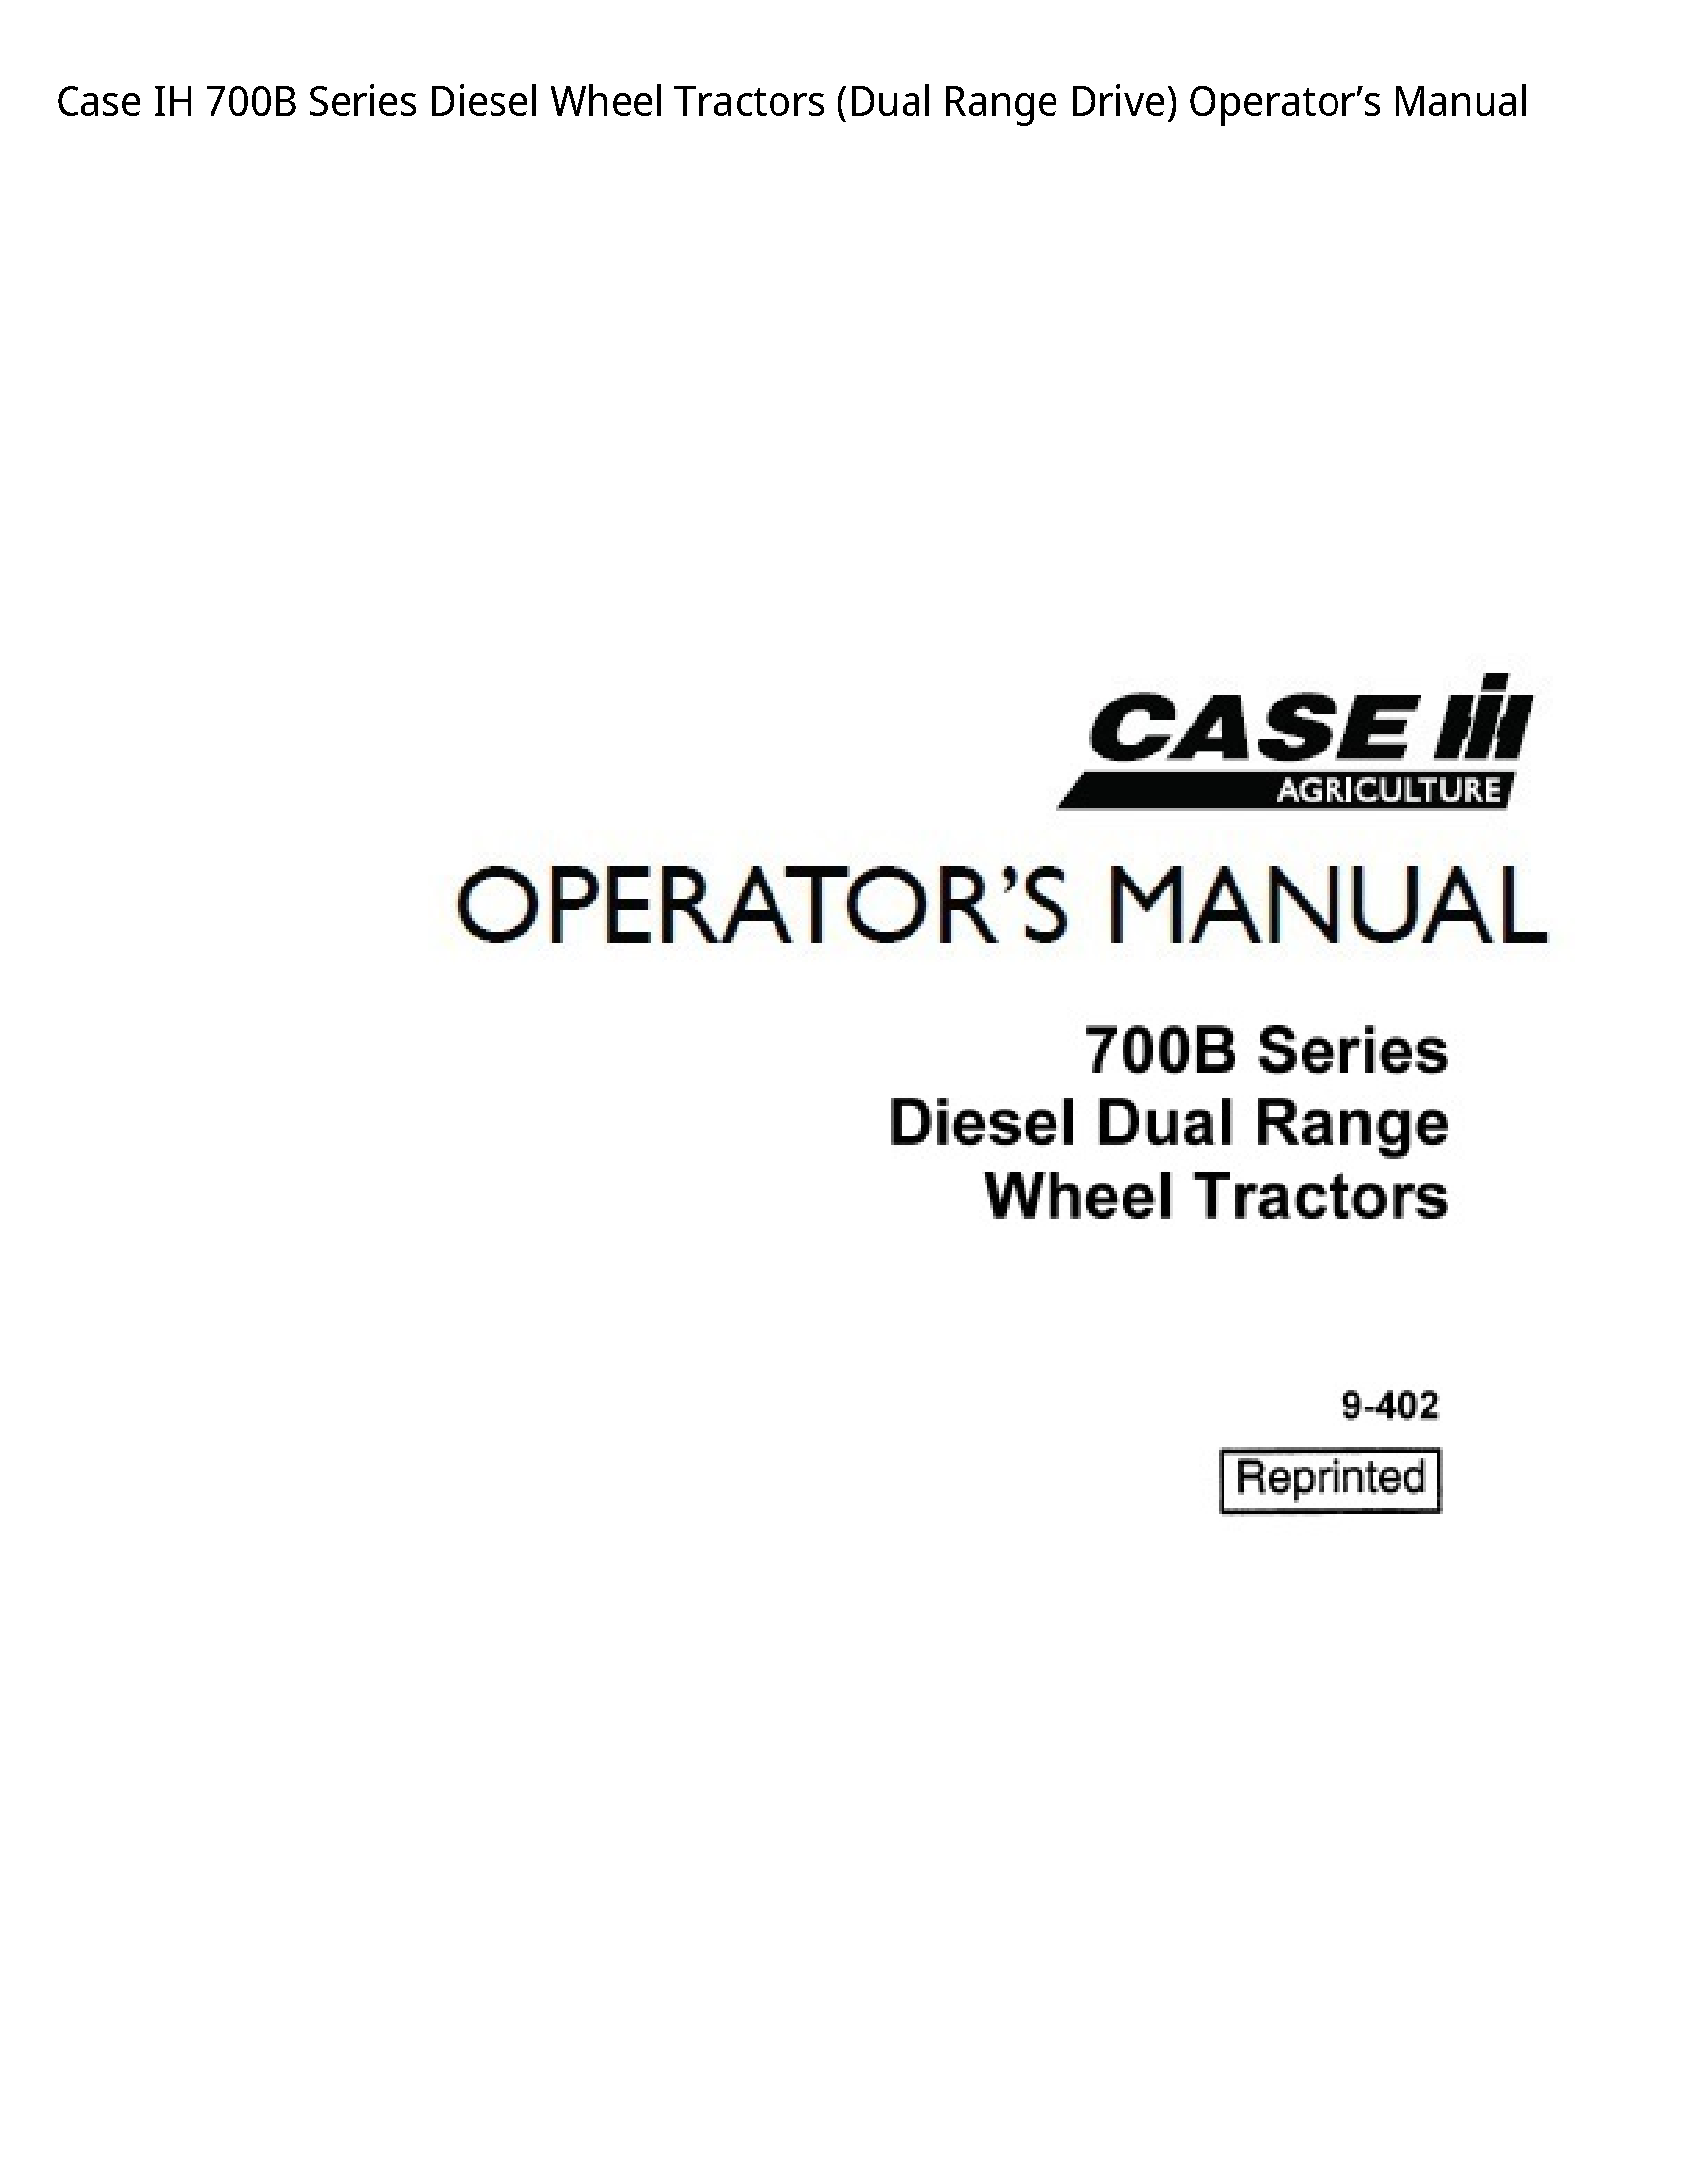 Case/Case IH 700B IH Series Diesel Wheel Tractors (Dual Range Drive) Operator’s manual